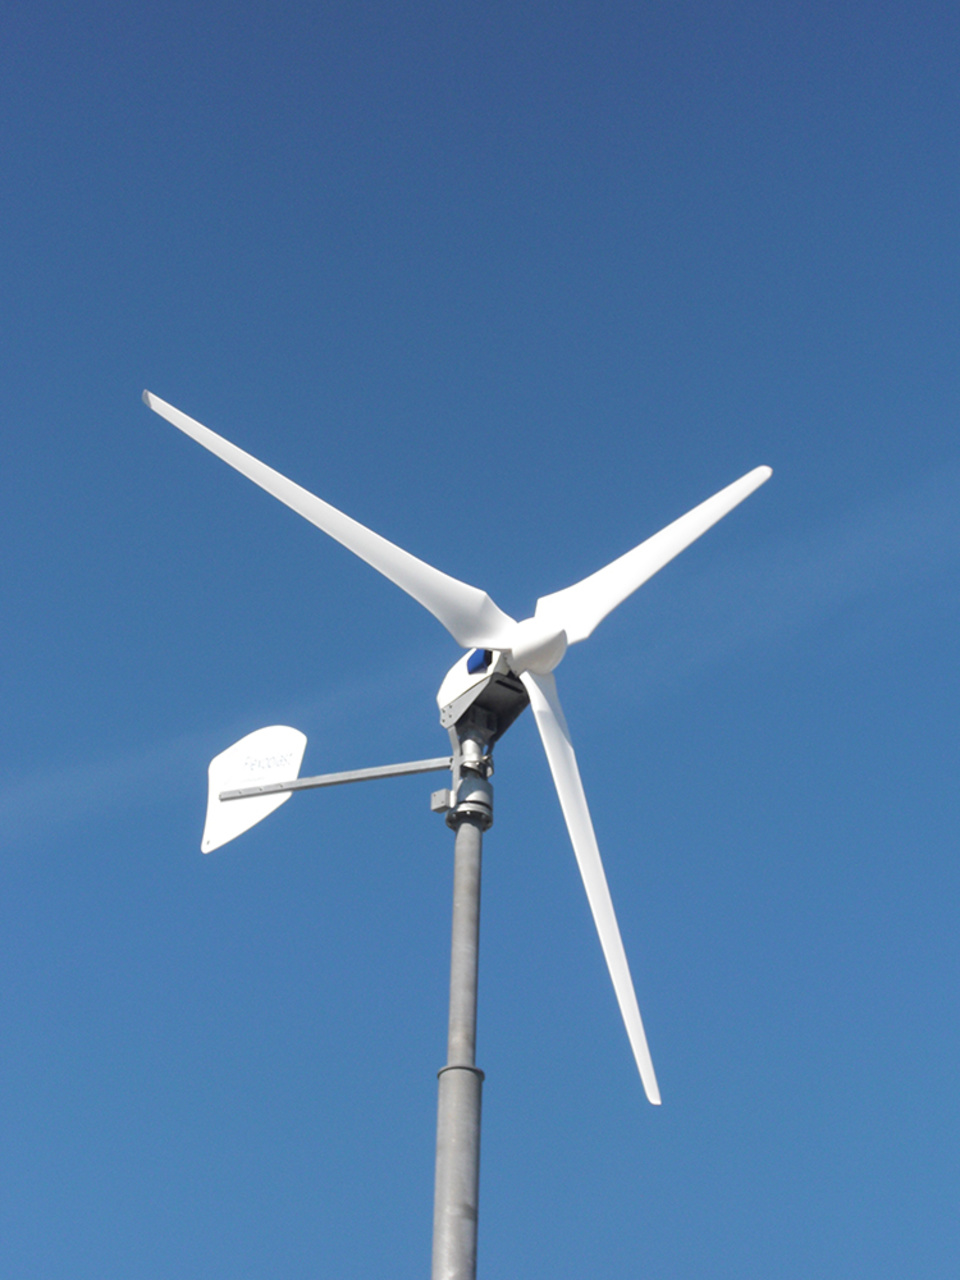 Windkraft2 bei Michael Herrmann in Hörselberg-Hainich